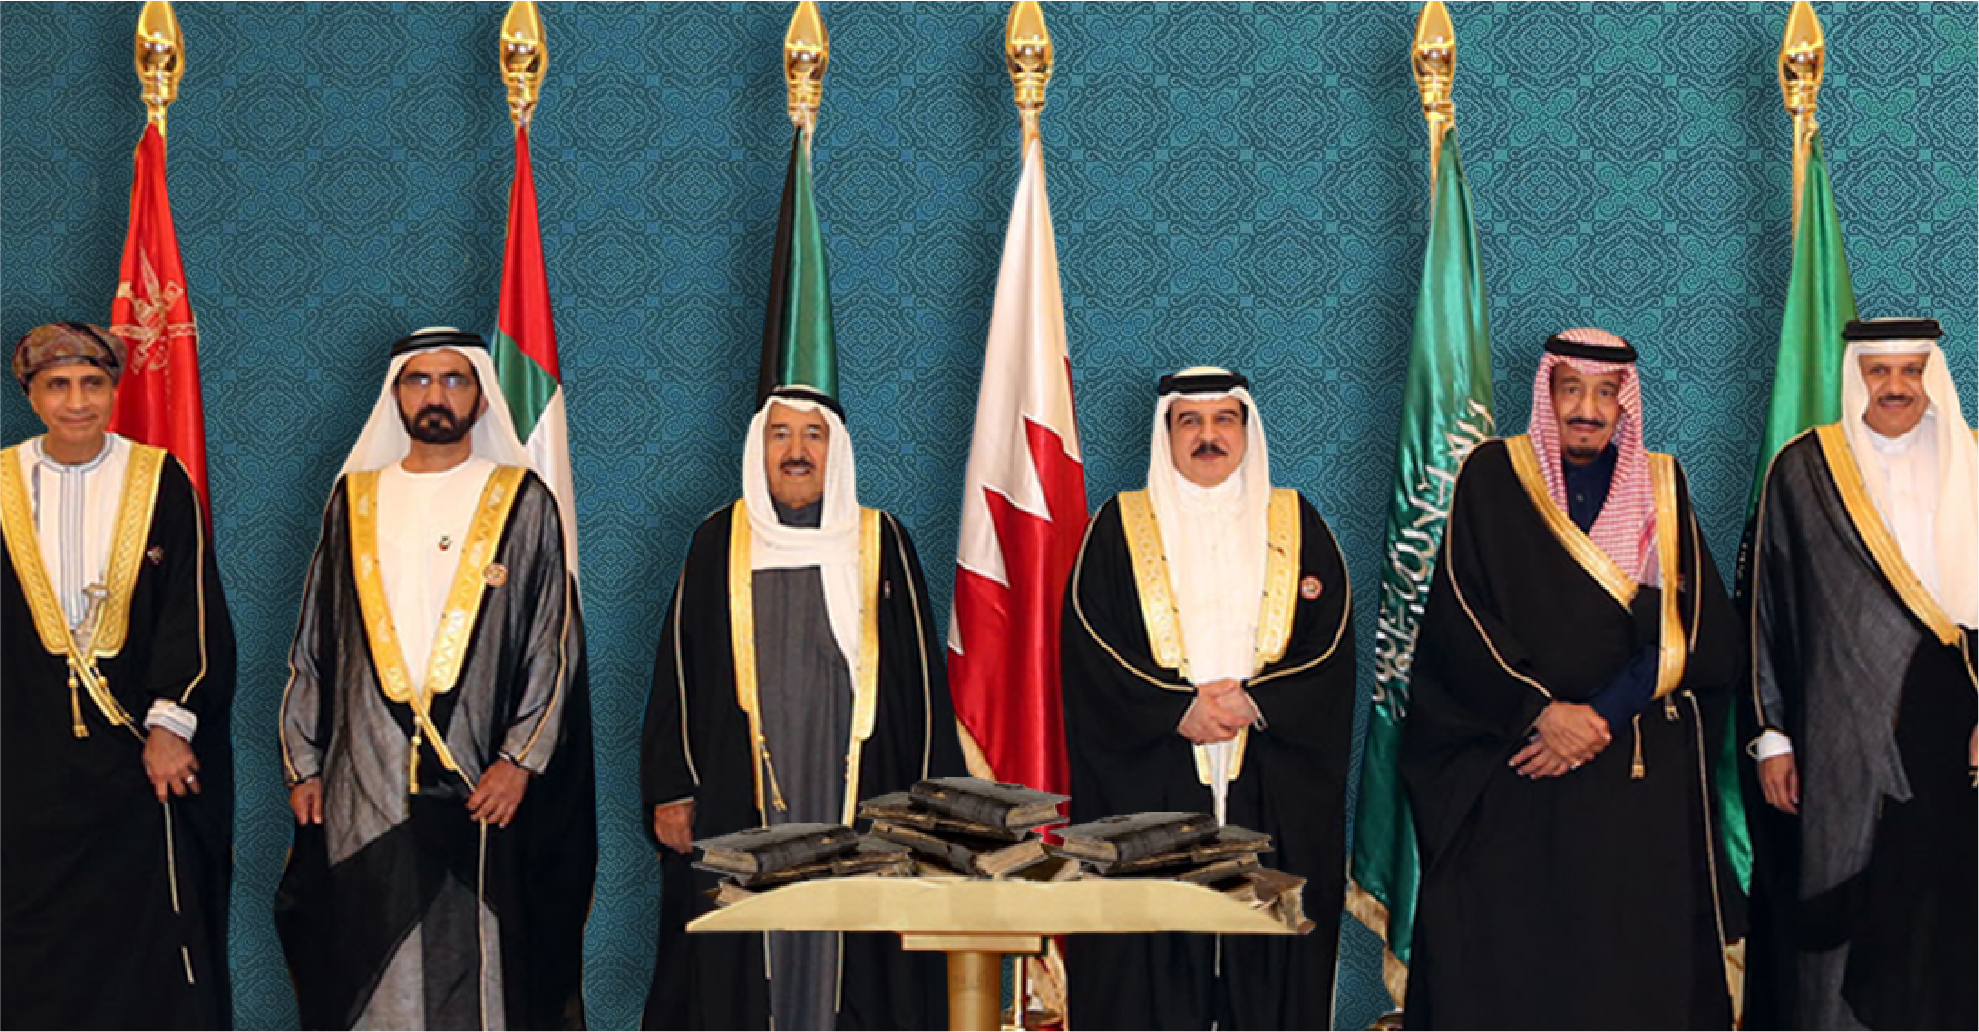 صورة مجلس التعاون الخليجي يتبرّع بتعديل كل المخطوطات التاريخية التي تشير إلى الخليج بأنه فارسي